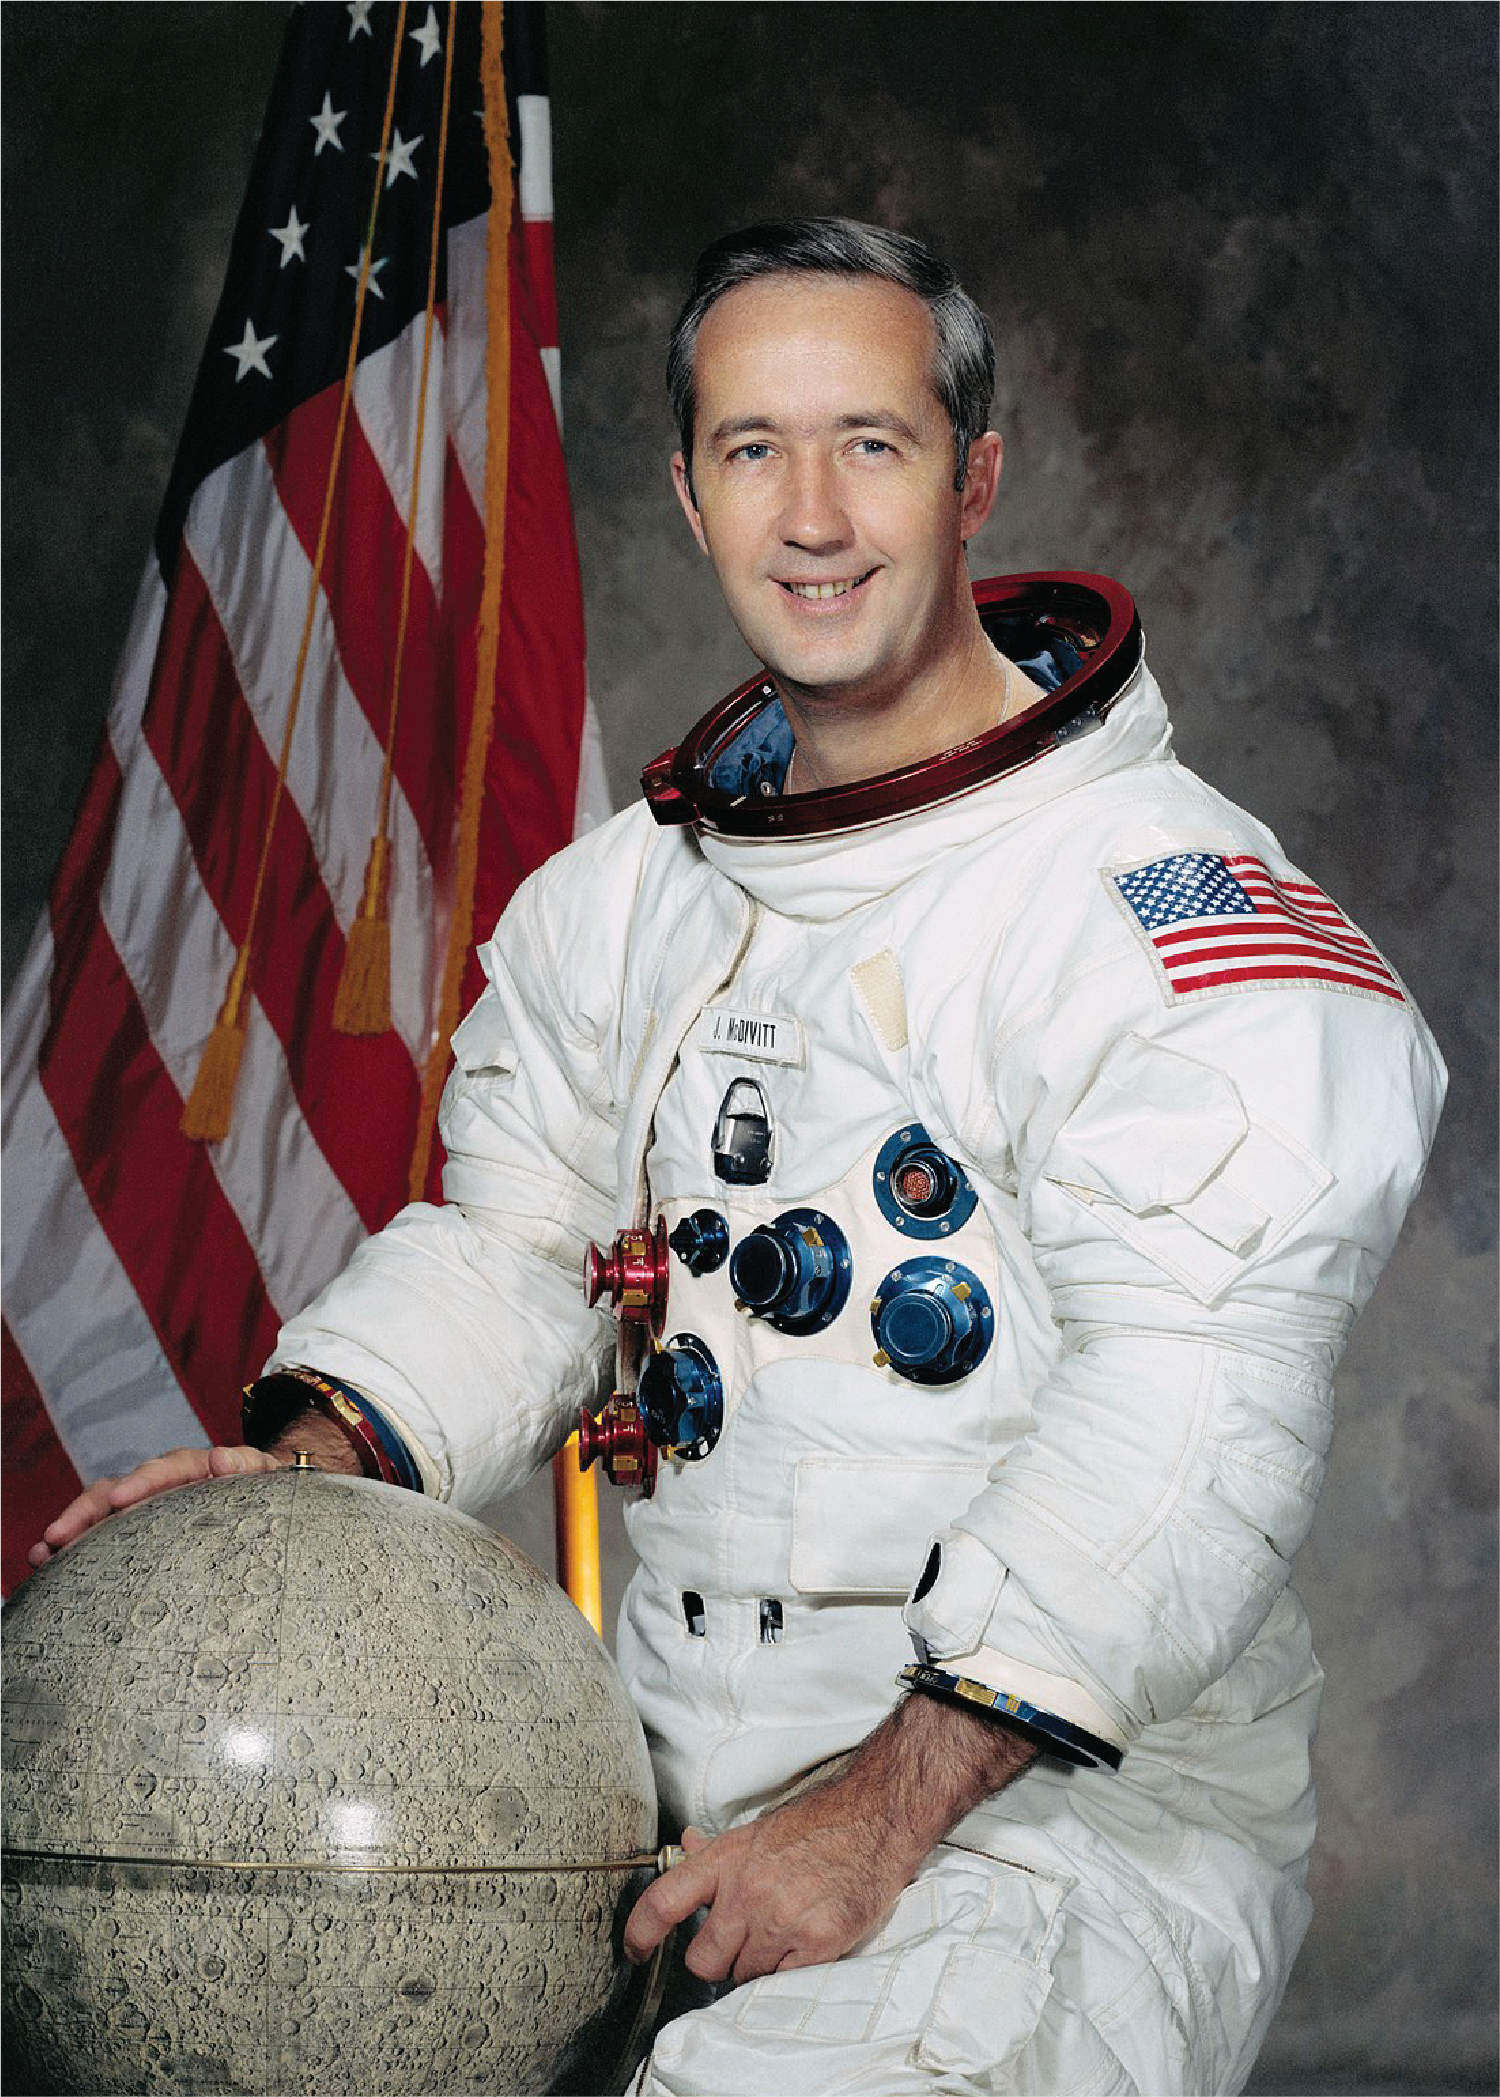 Astronaut James McDivitt